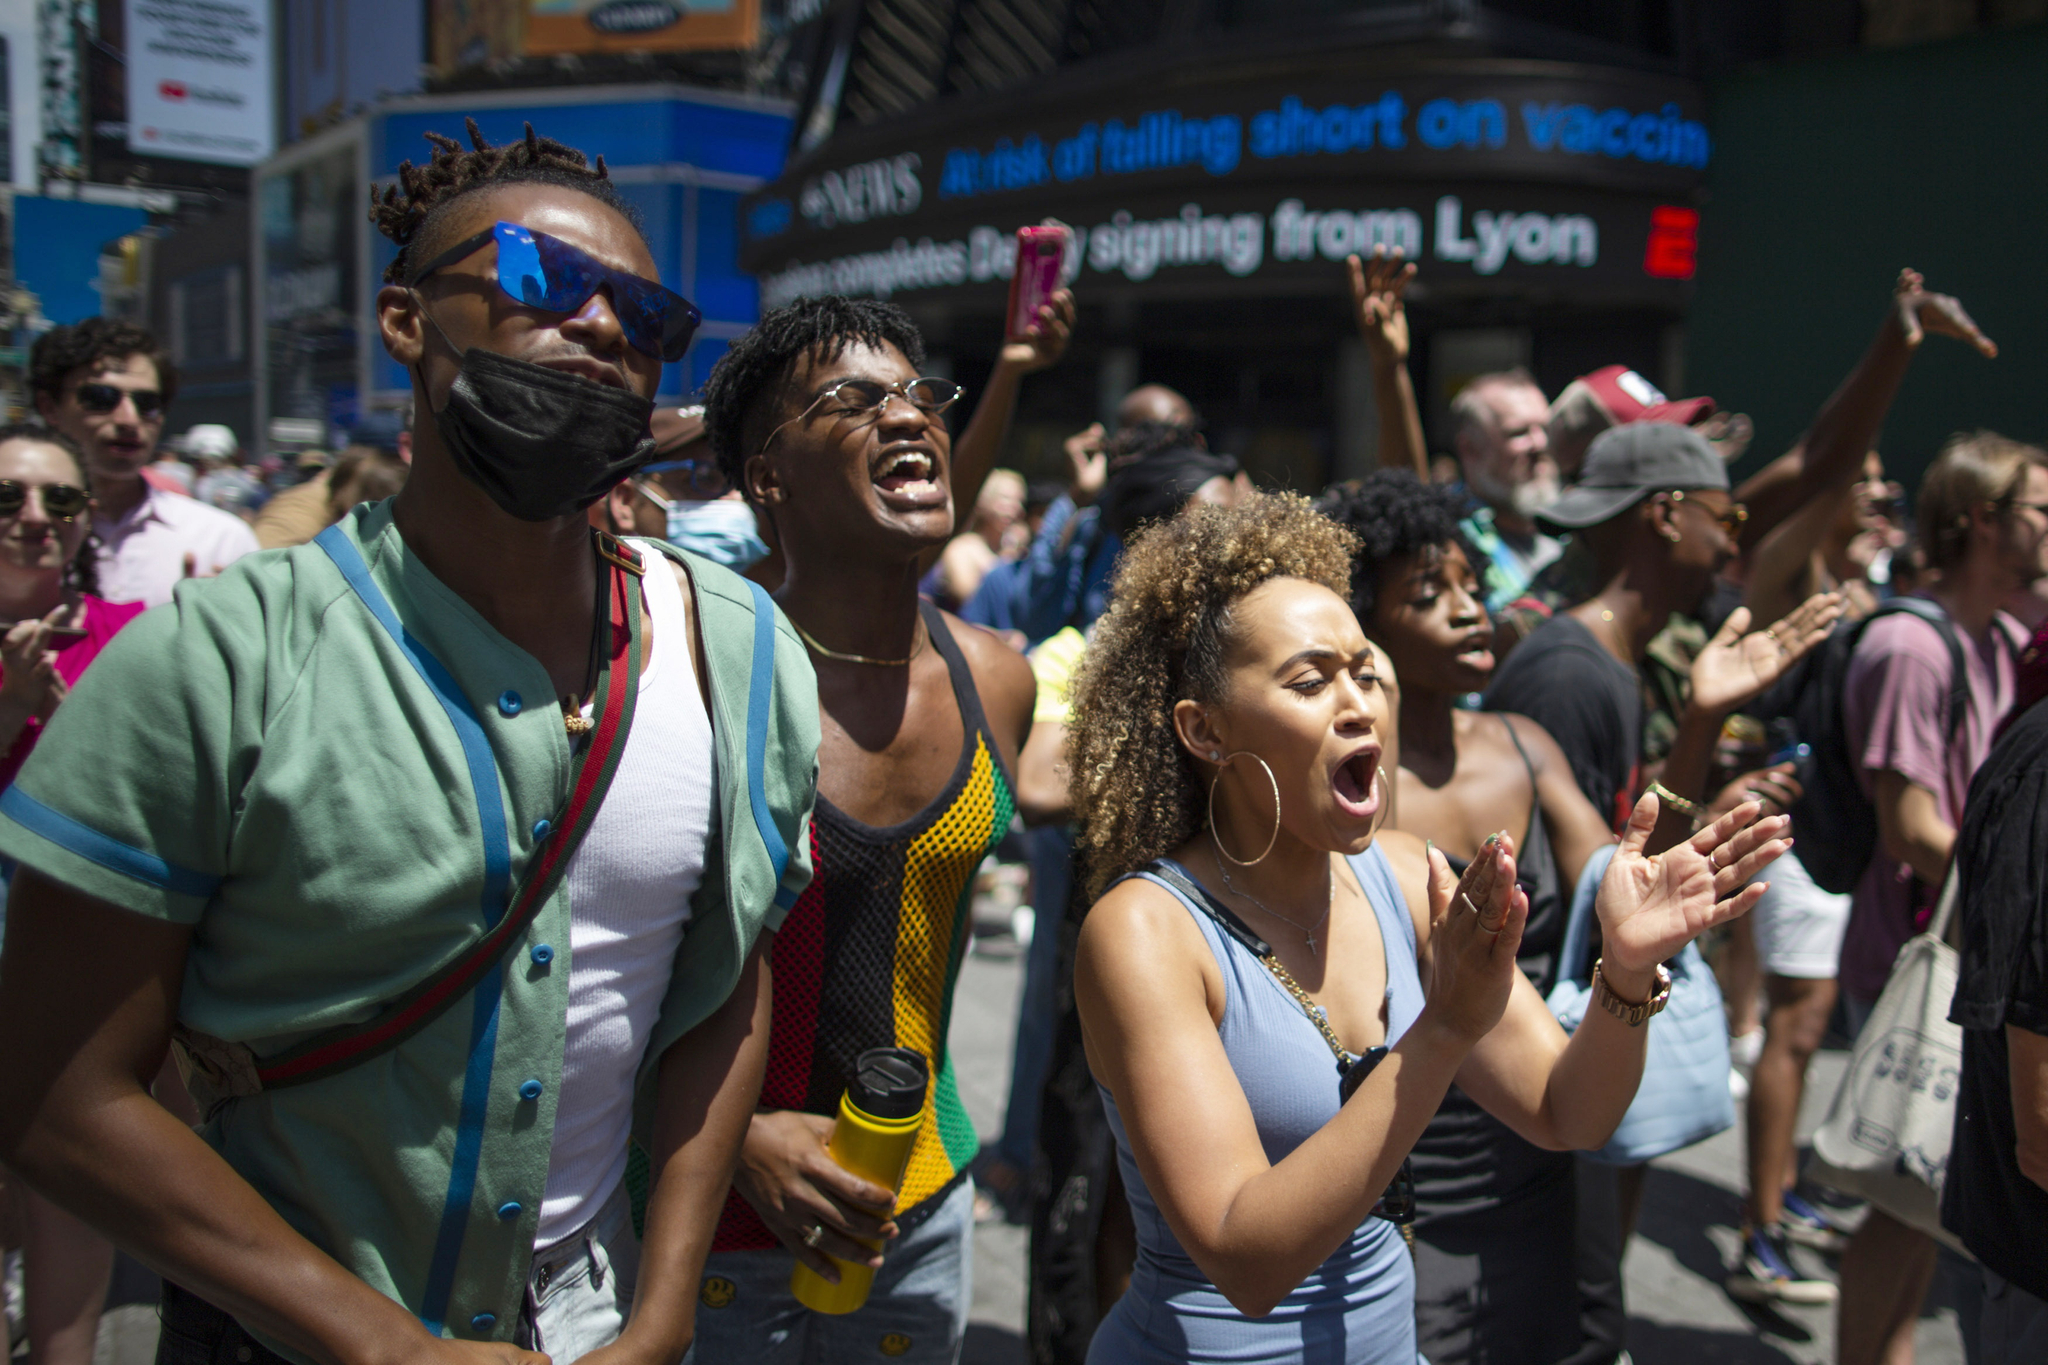 뉴욕 시민들이 19일 뉴욕 타임스 스퀘어에서 준틴스 축하행사를 하고 있다. 이날 미국은 처음으로 연방 공휴일로 지정된 노예 해방일 준틴스를 맞아 다양한 퍼레이드, 야외행사, 역사 강연 등이 진행됐다. AP=연합뉴스